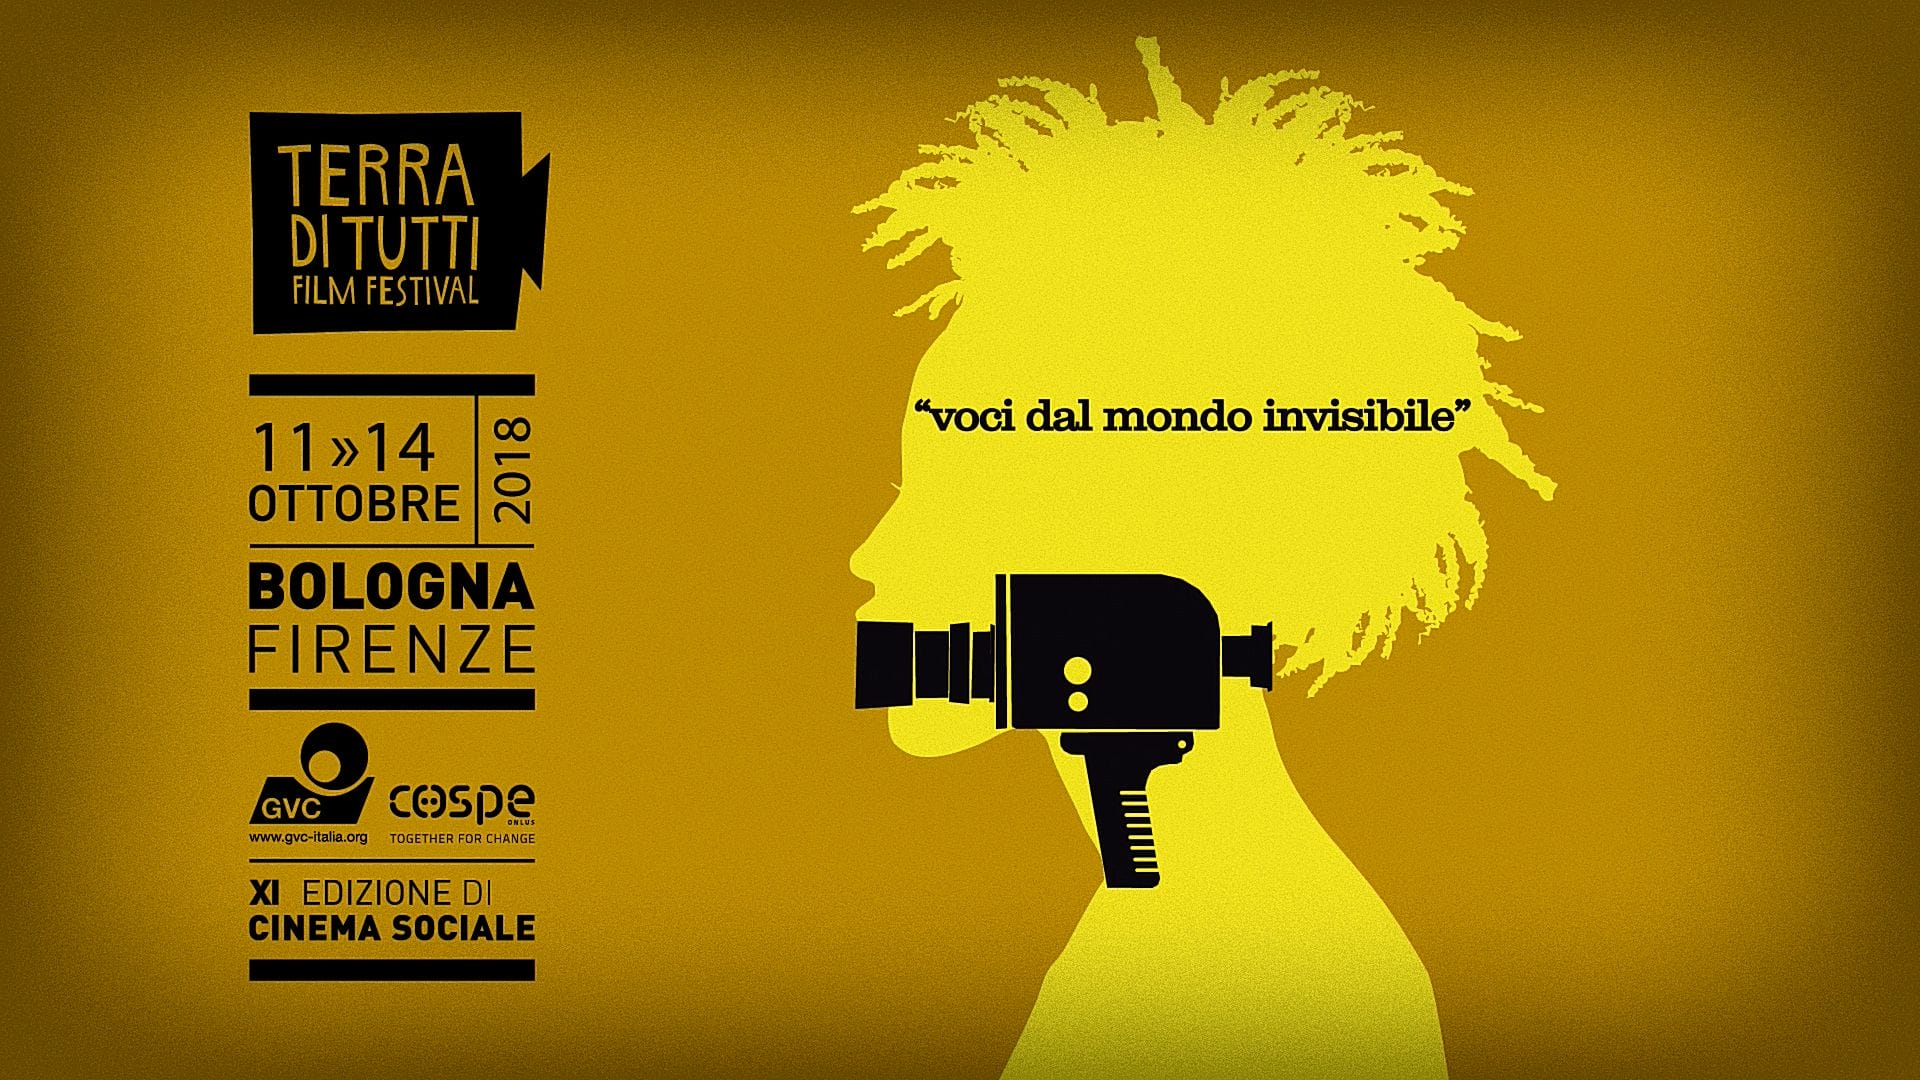 Terra di tutti film festival fa tappa a Firenze con una rassegna sulle lotte ambientali